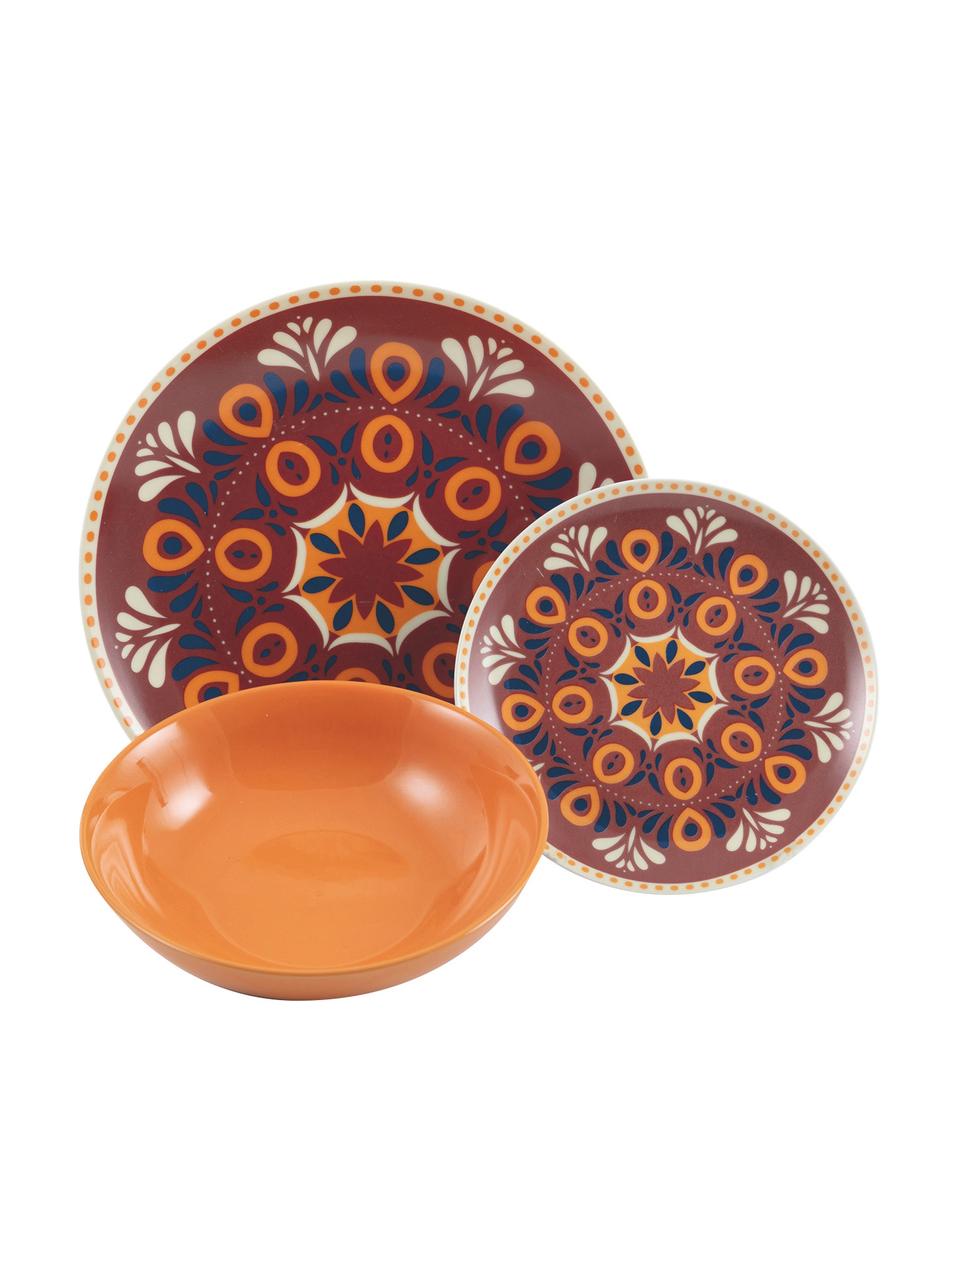 Sada porcelánového nádobí Shiraz, pro 6 osob (18 dílů), Porcelán, Více barev, se vzorem, Sada s různými velikostmi